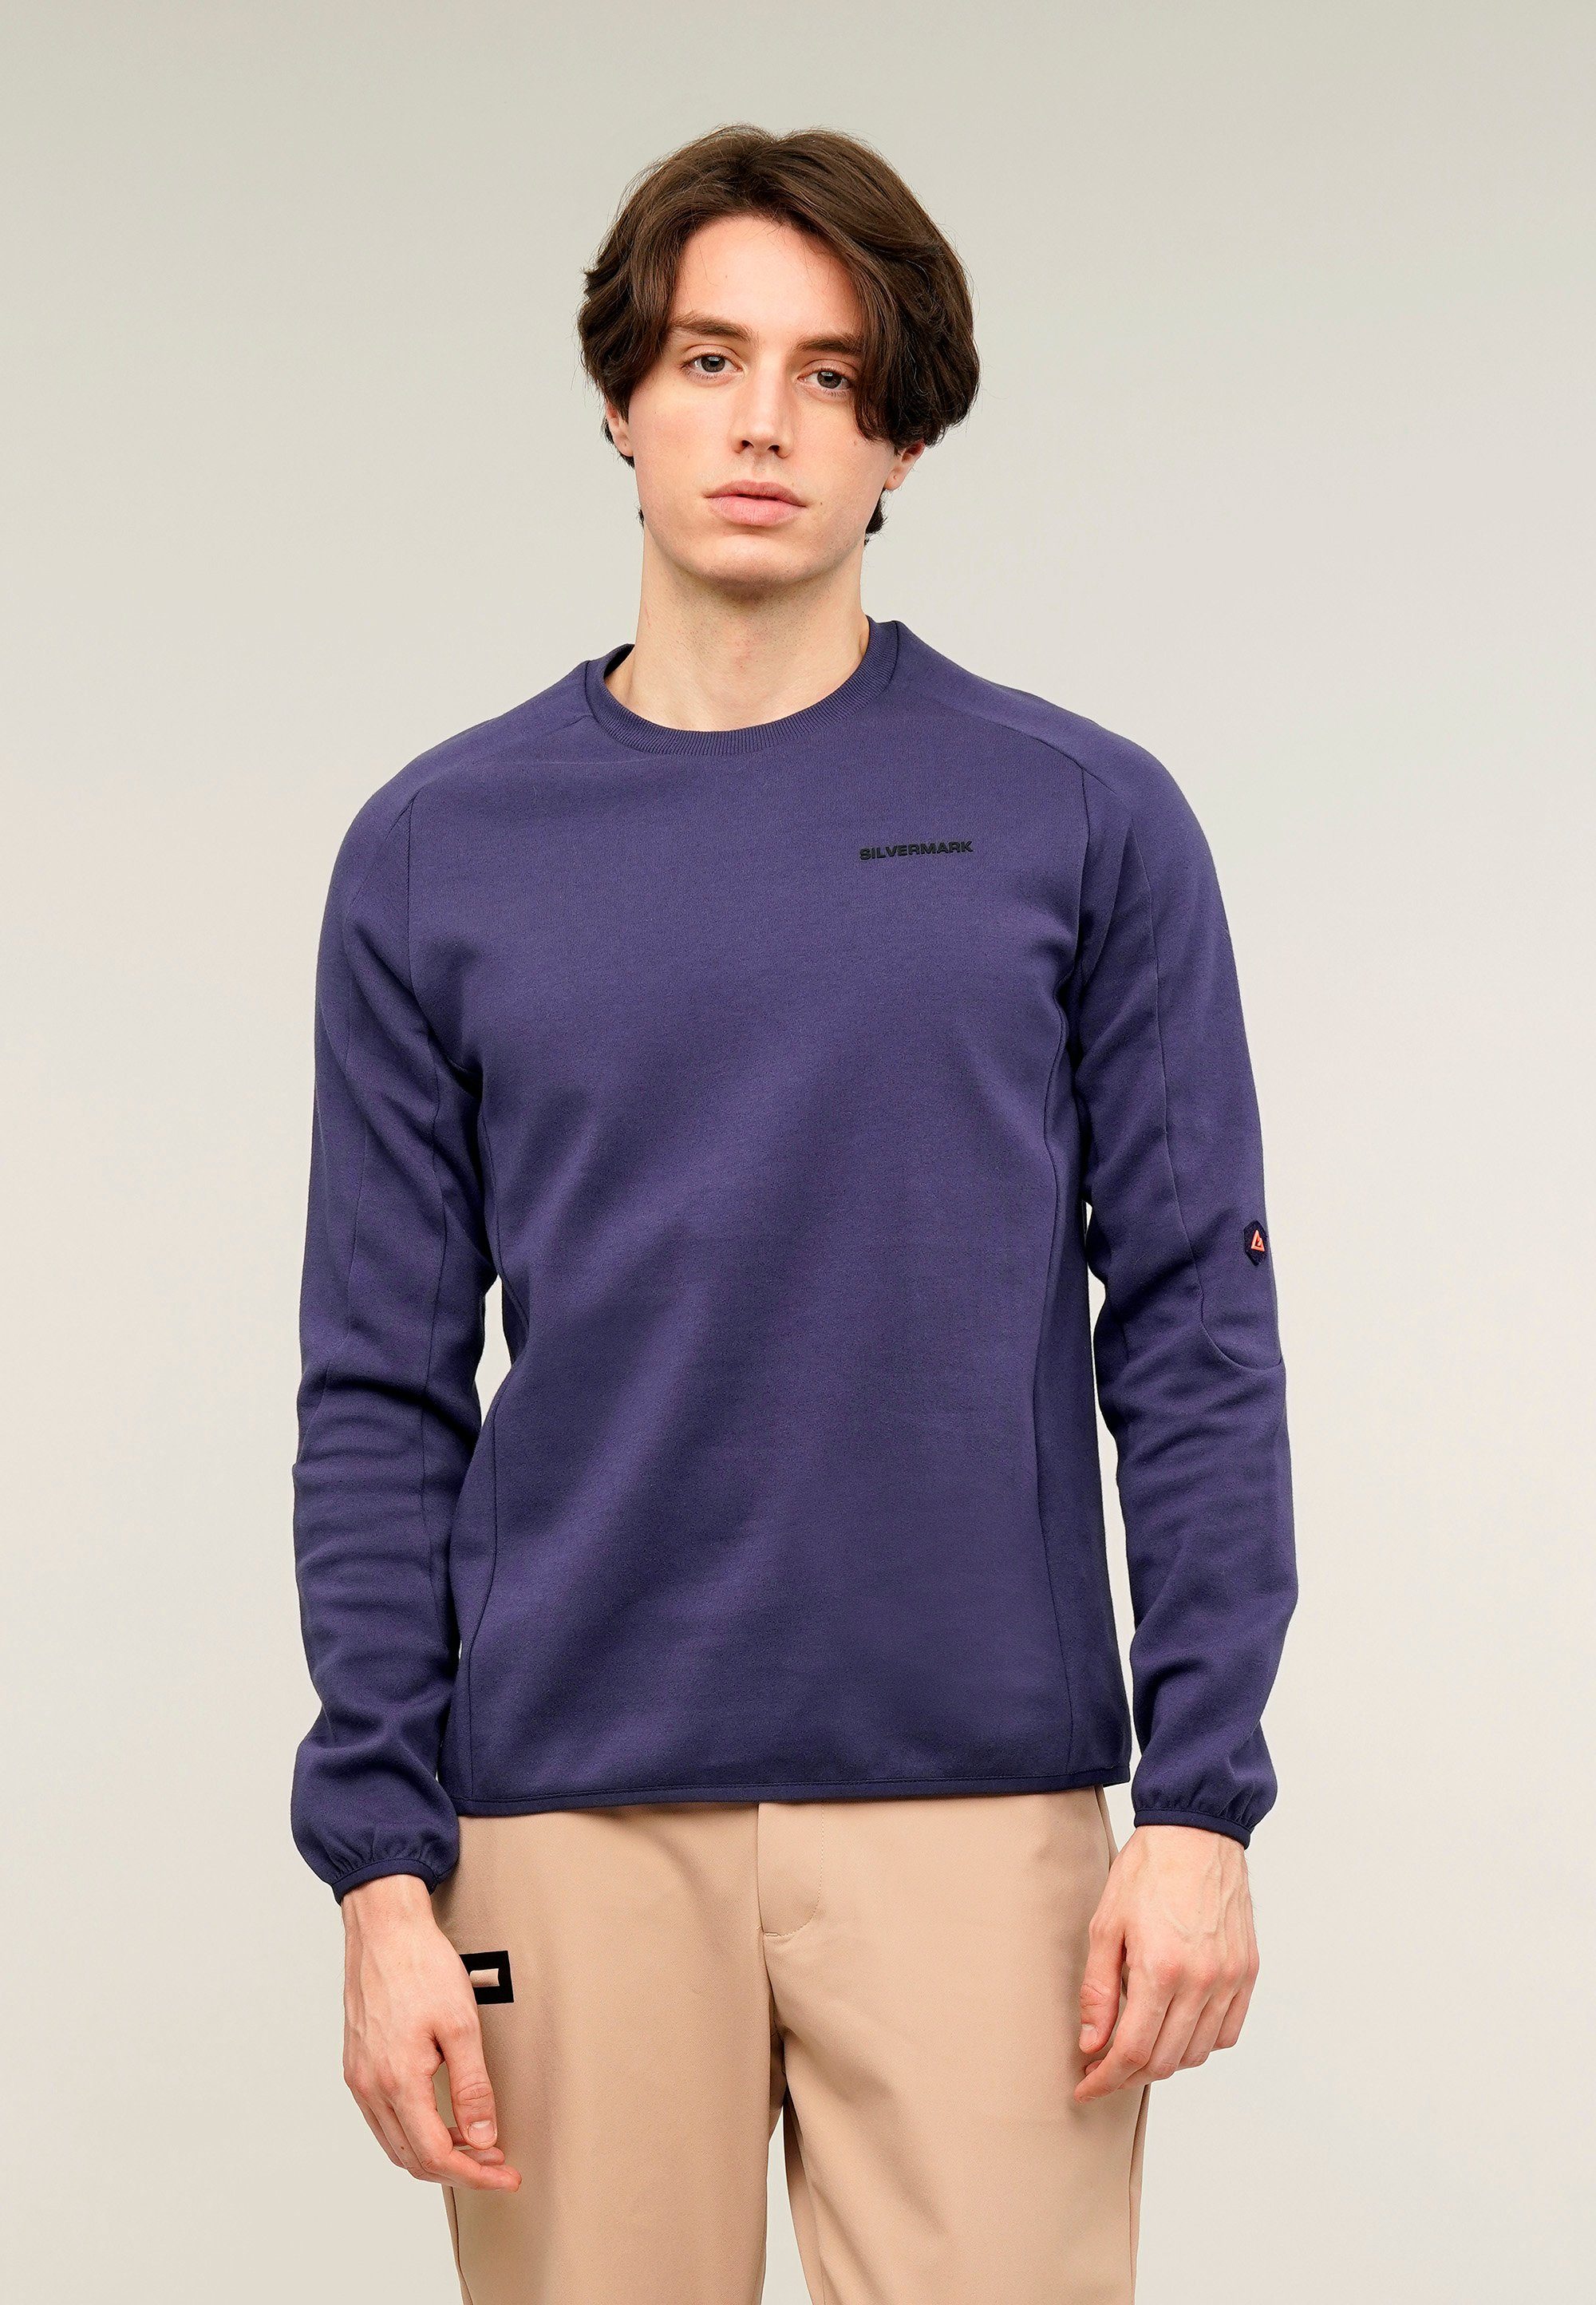 GIORDANO Sweatshirt Silvermark by G-Motion mit praktischen Rückentaschen blau